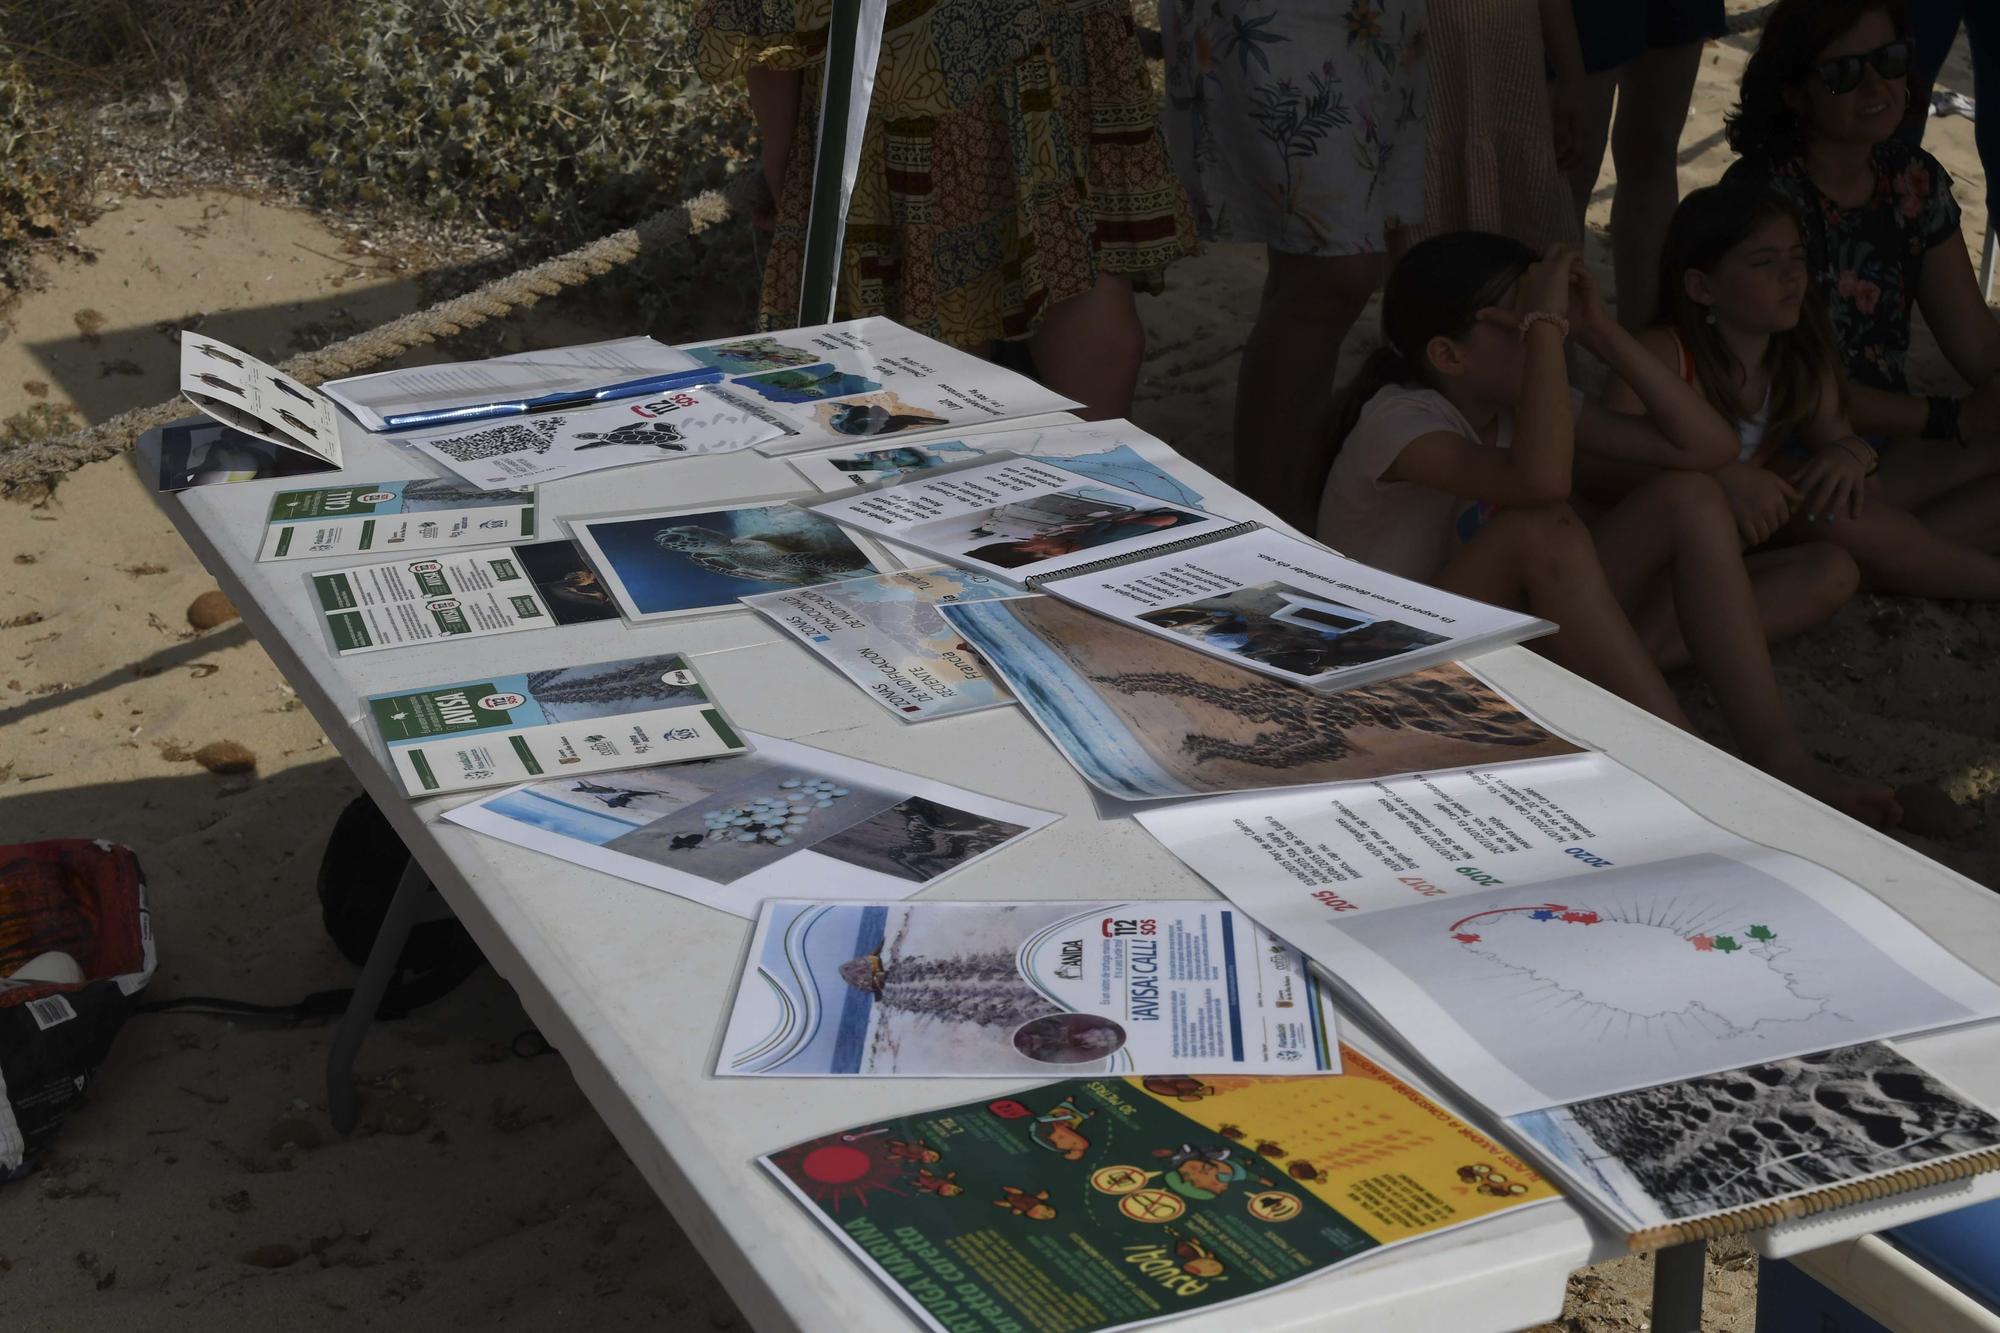 Galería de imágenes de la jornada en ses Salines de Ibiza sobre el desove de tortugas